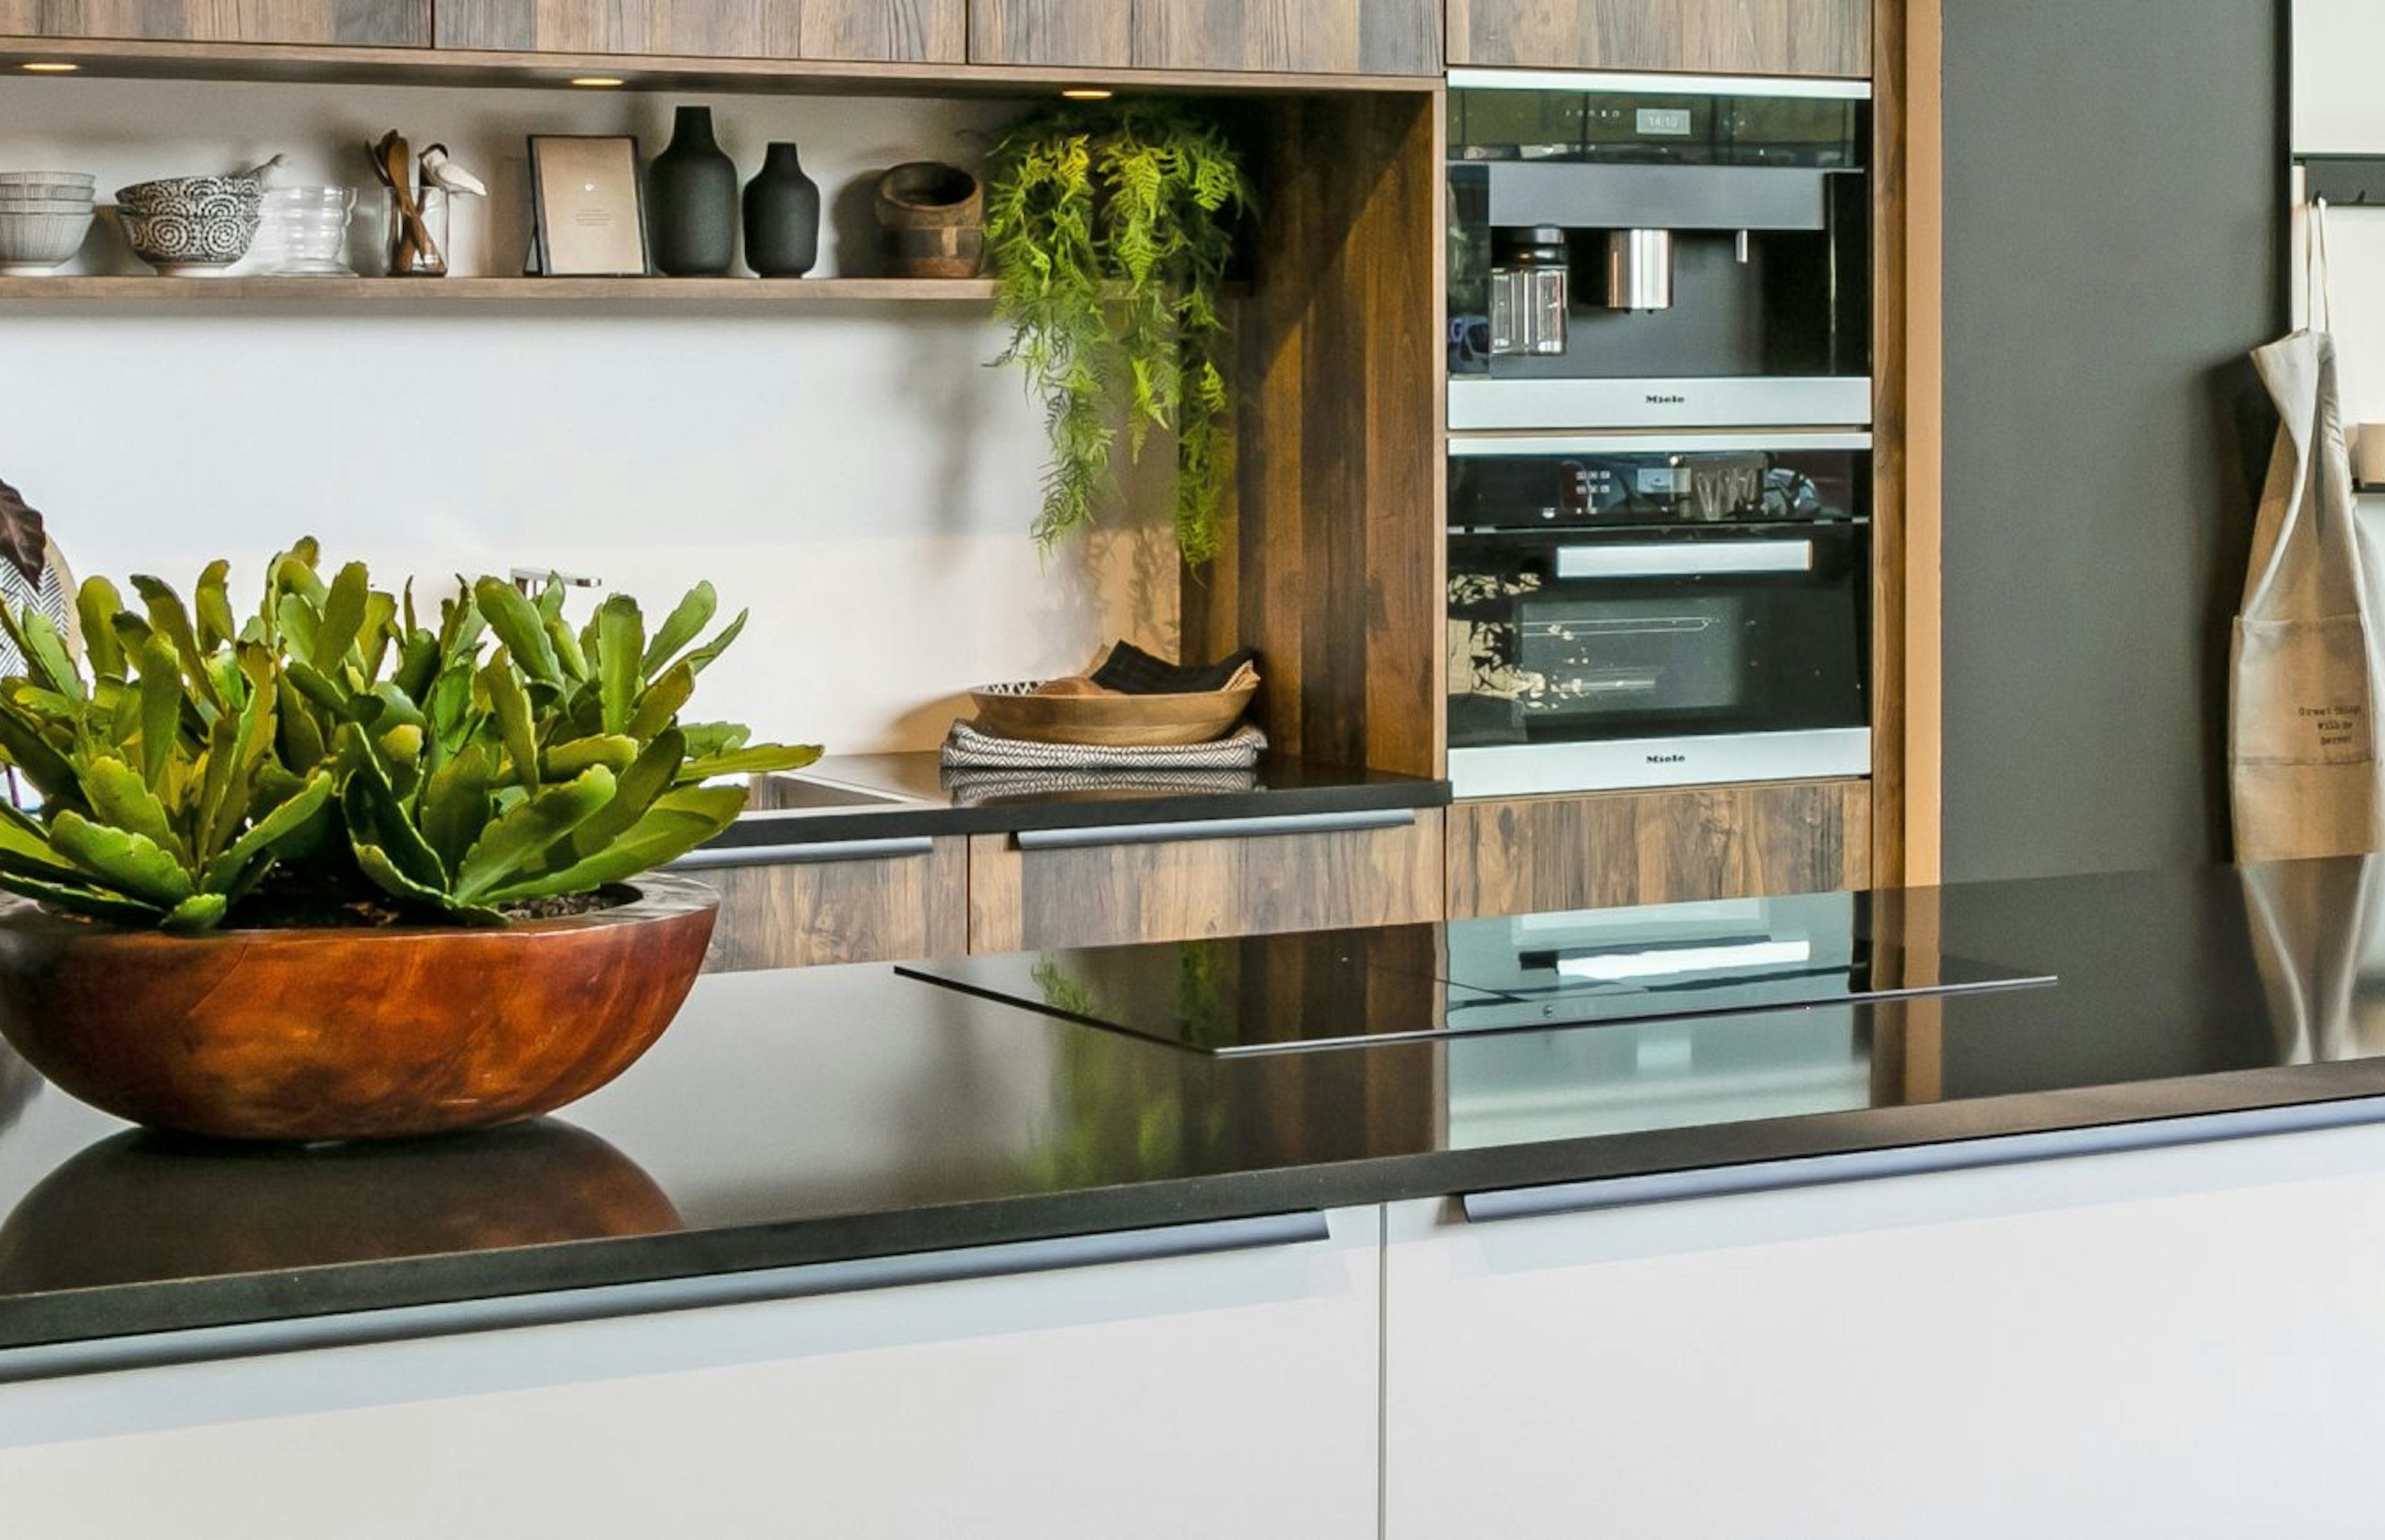 Design keuken met ruim kookeiland